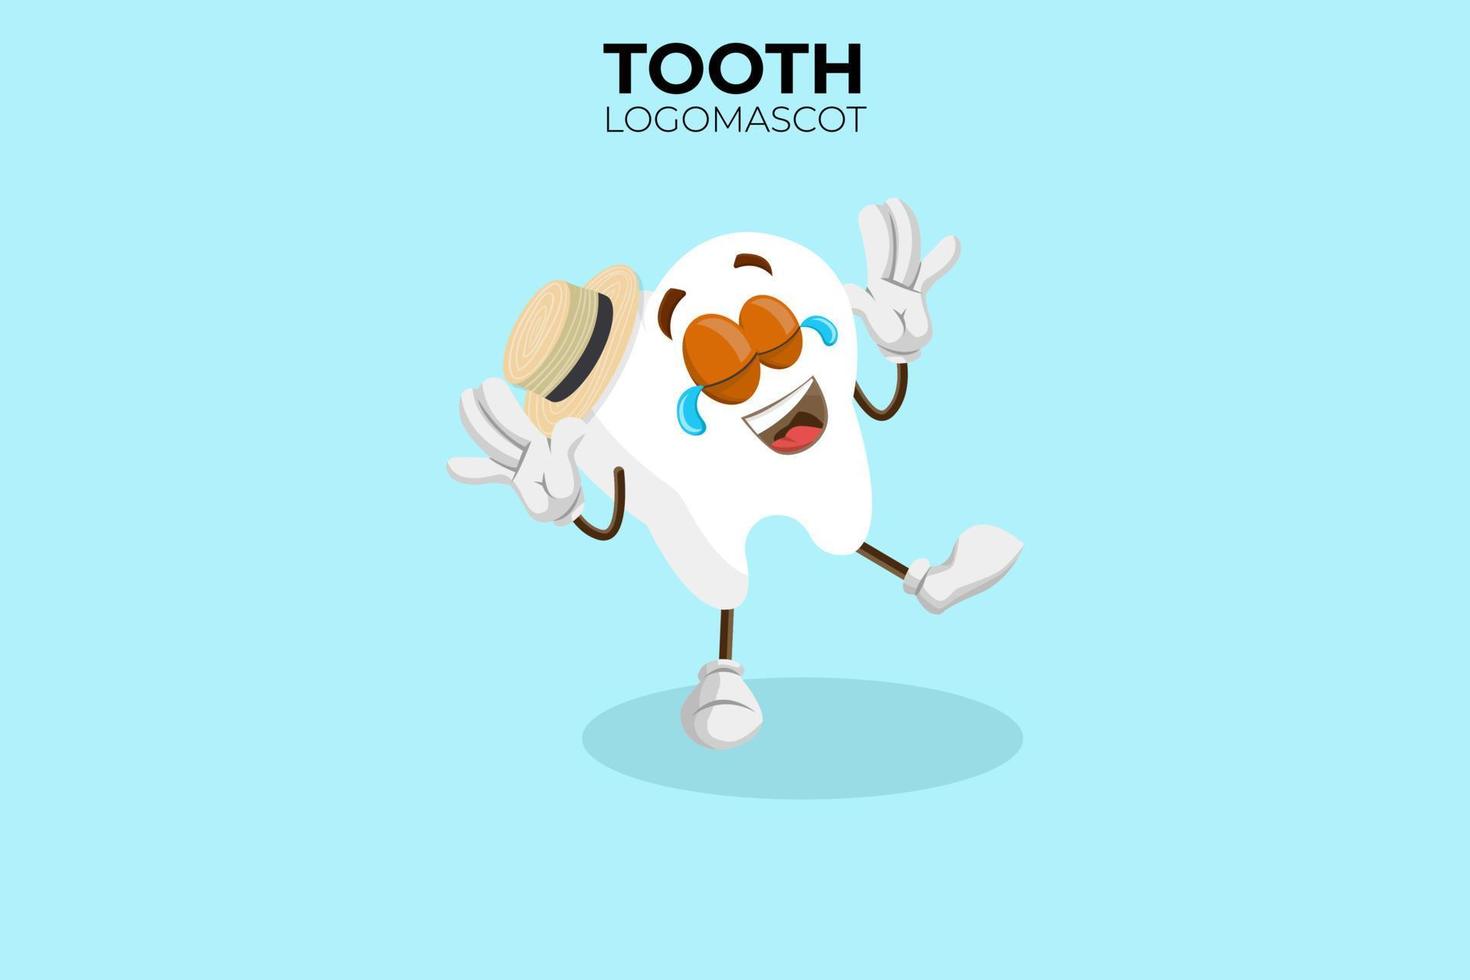 mascotte dei denti dei cartoni animati, illustrazione vettoriale di una mascotte del personaggio dei denti carino